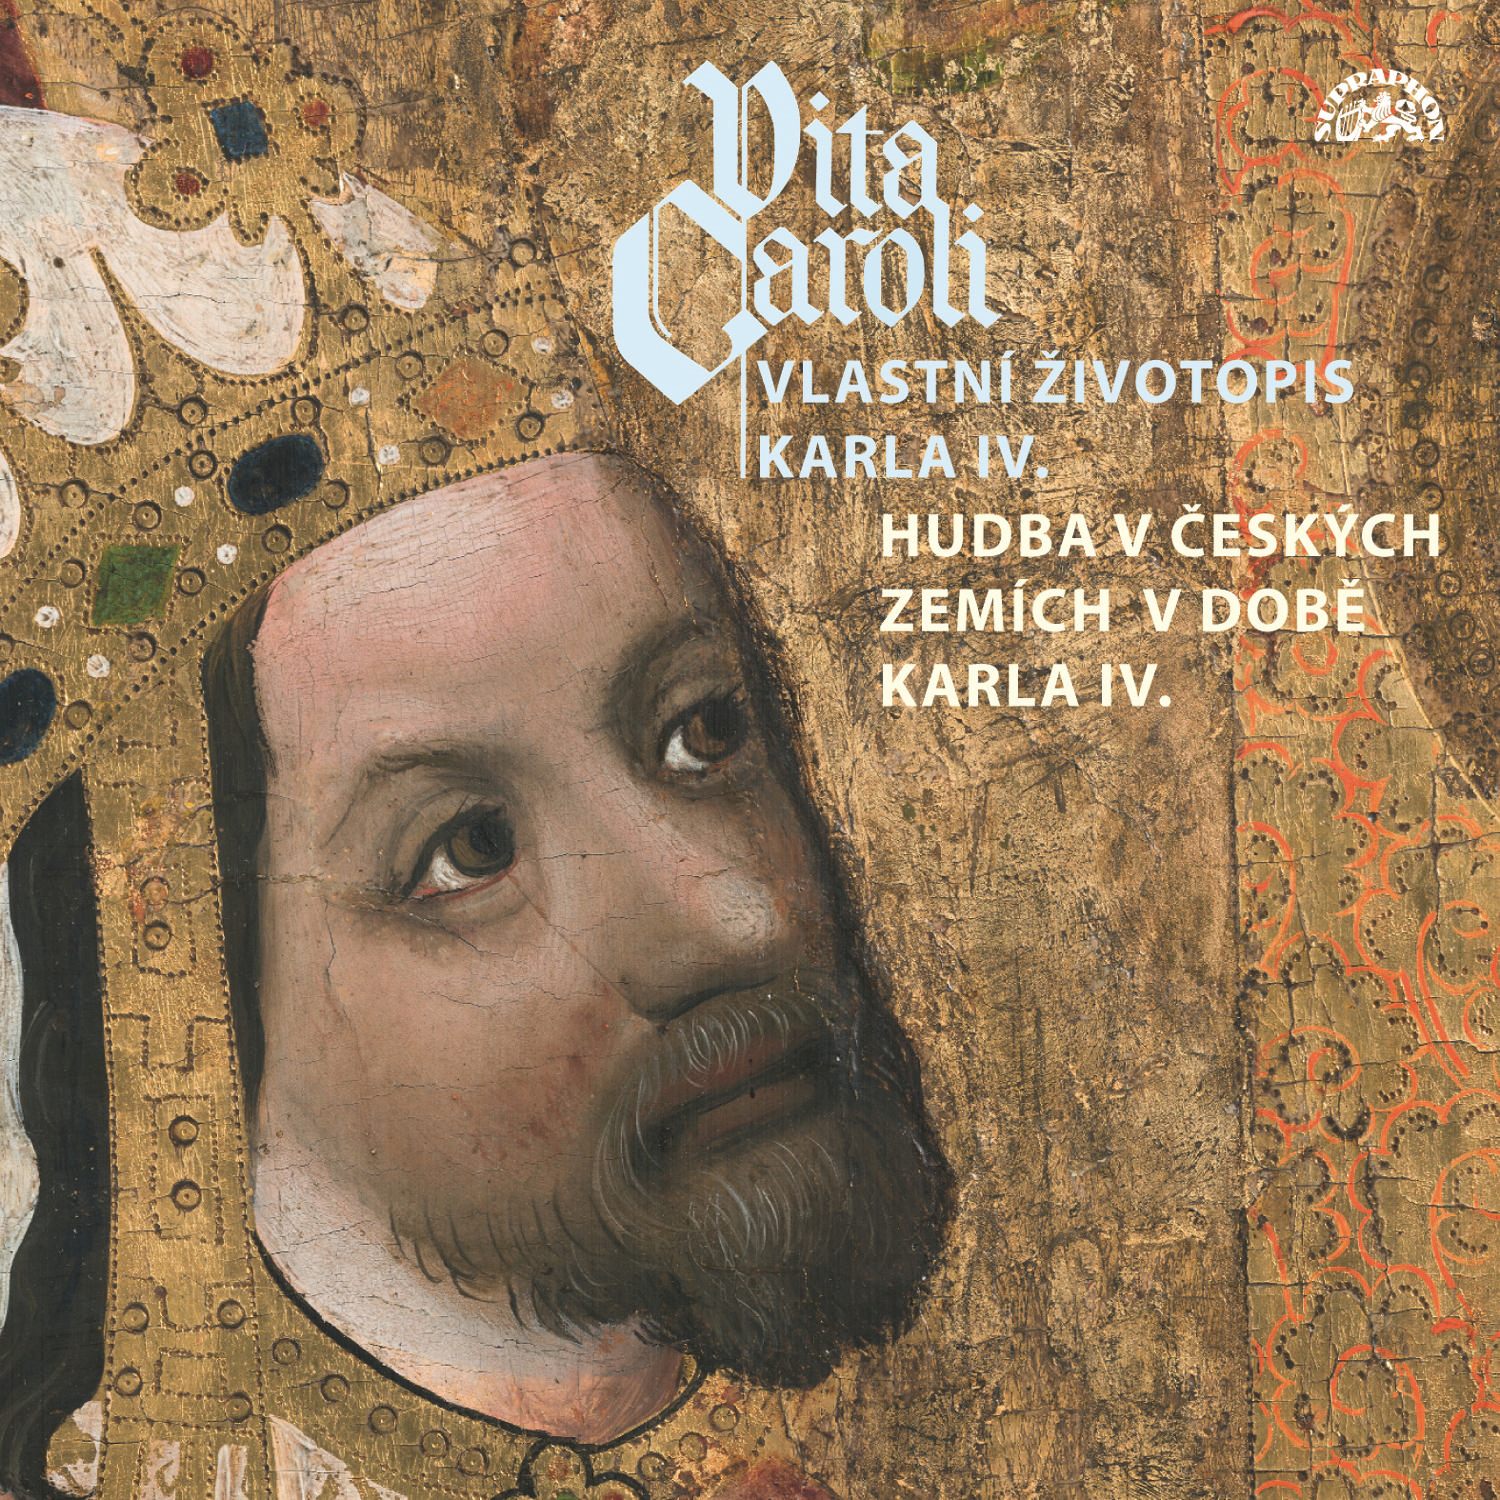 CD Shop - VARIOUS VITA CAROLI - VLASTNI ZIVOTOPIS KARLA IV. + HUDBA NA DVORE KARLA IV.